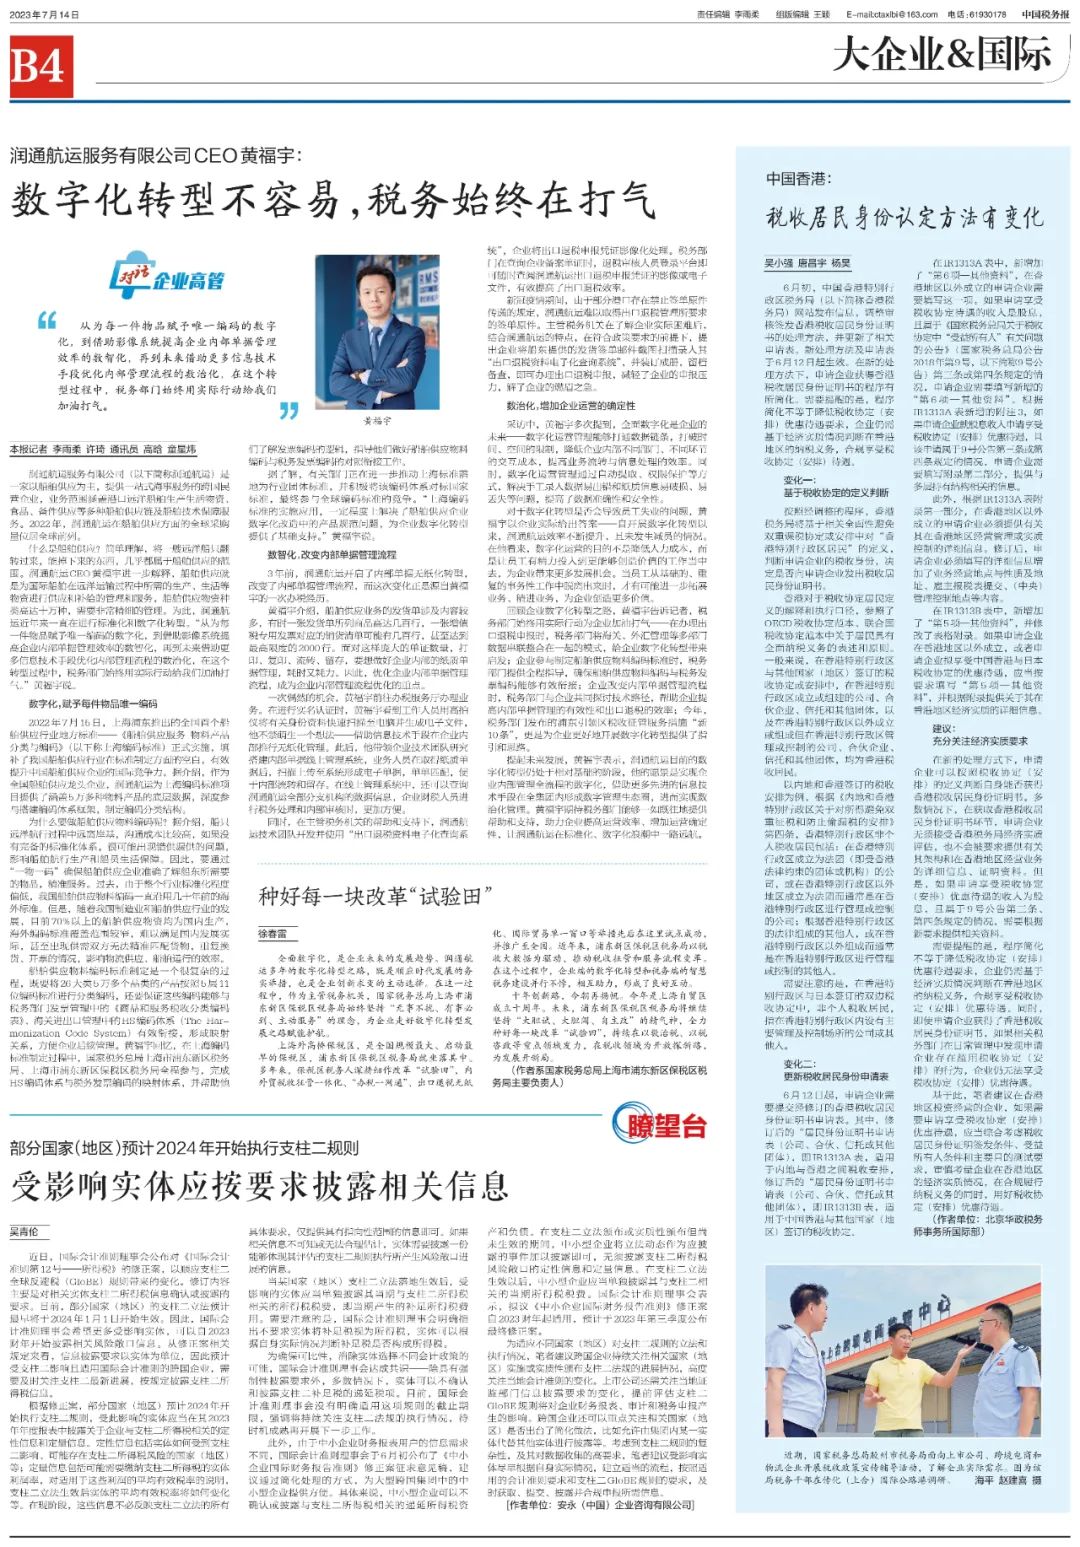 華政在《中國稅務報》發文解讀香港稅收居民身份認定方法變化